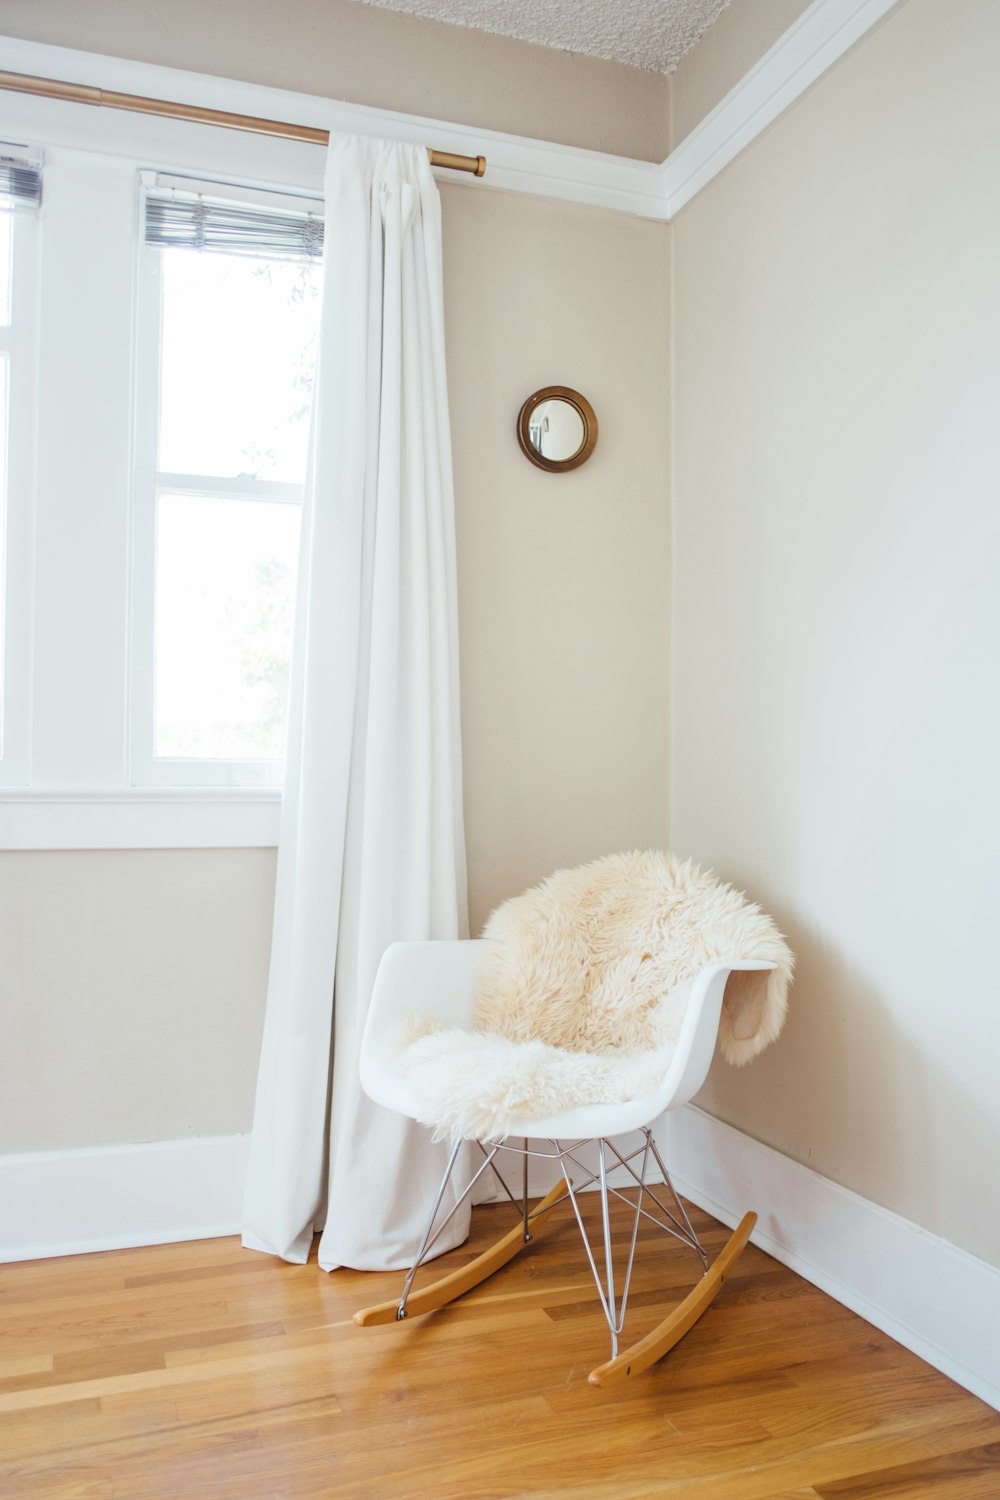 sedia a dondolo bianca e marrone vicino al muro dipinto di bianco e tenda della finestra bianca